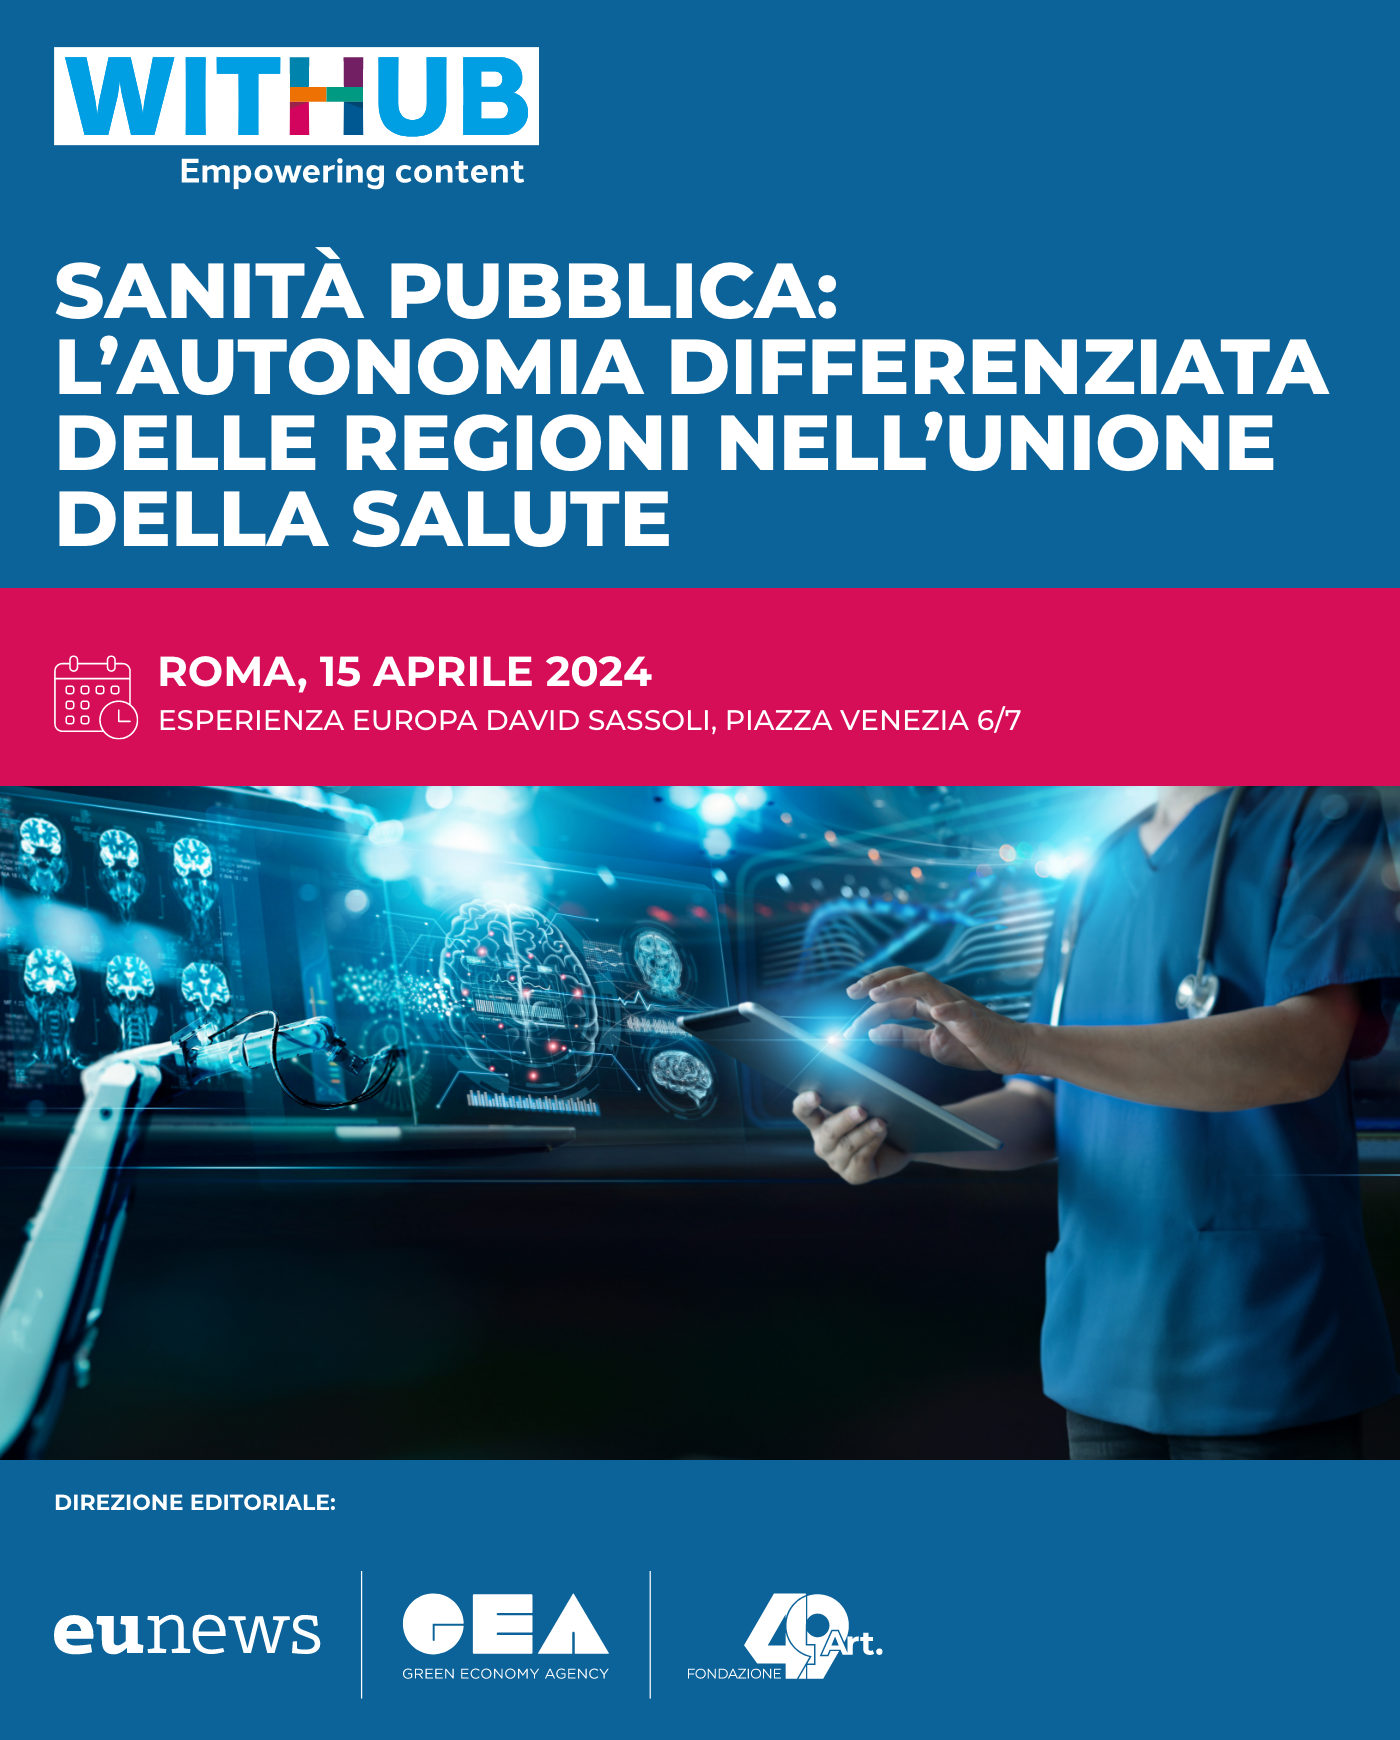 Sanità pubblica: l’autonomia differenziata delle Regioni nell’Unione della salute